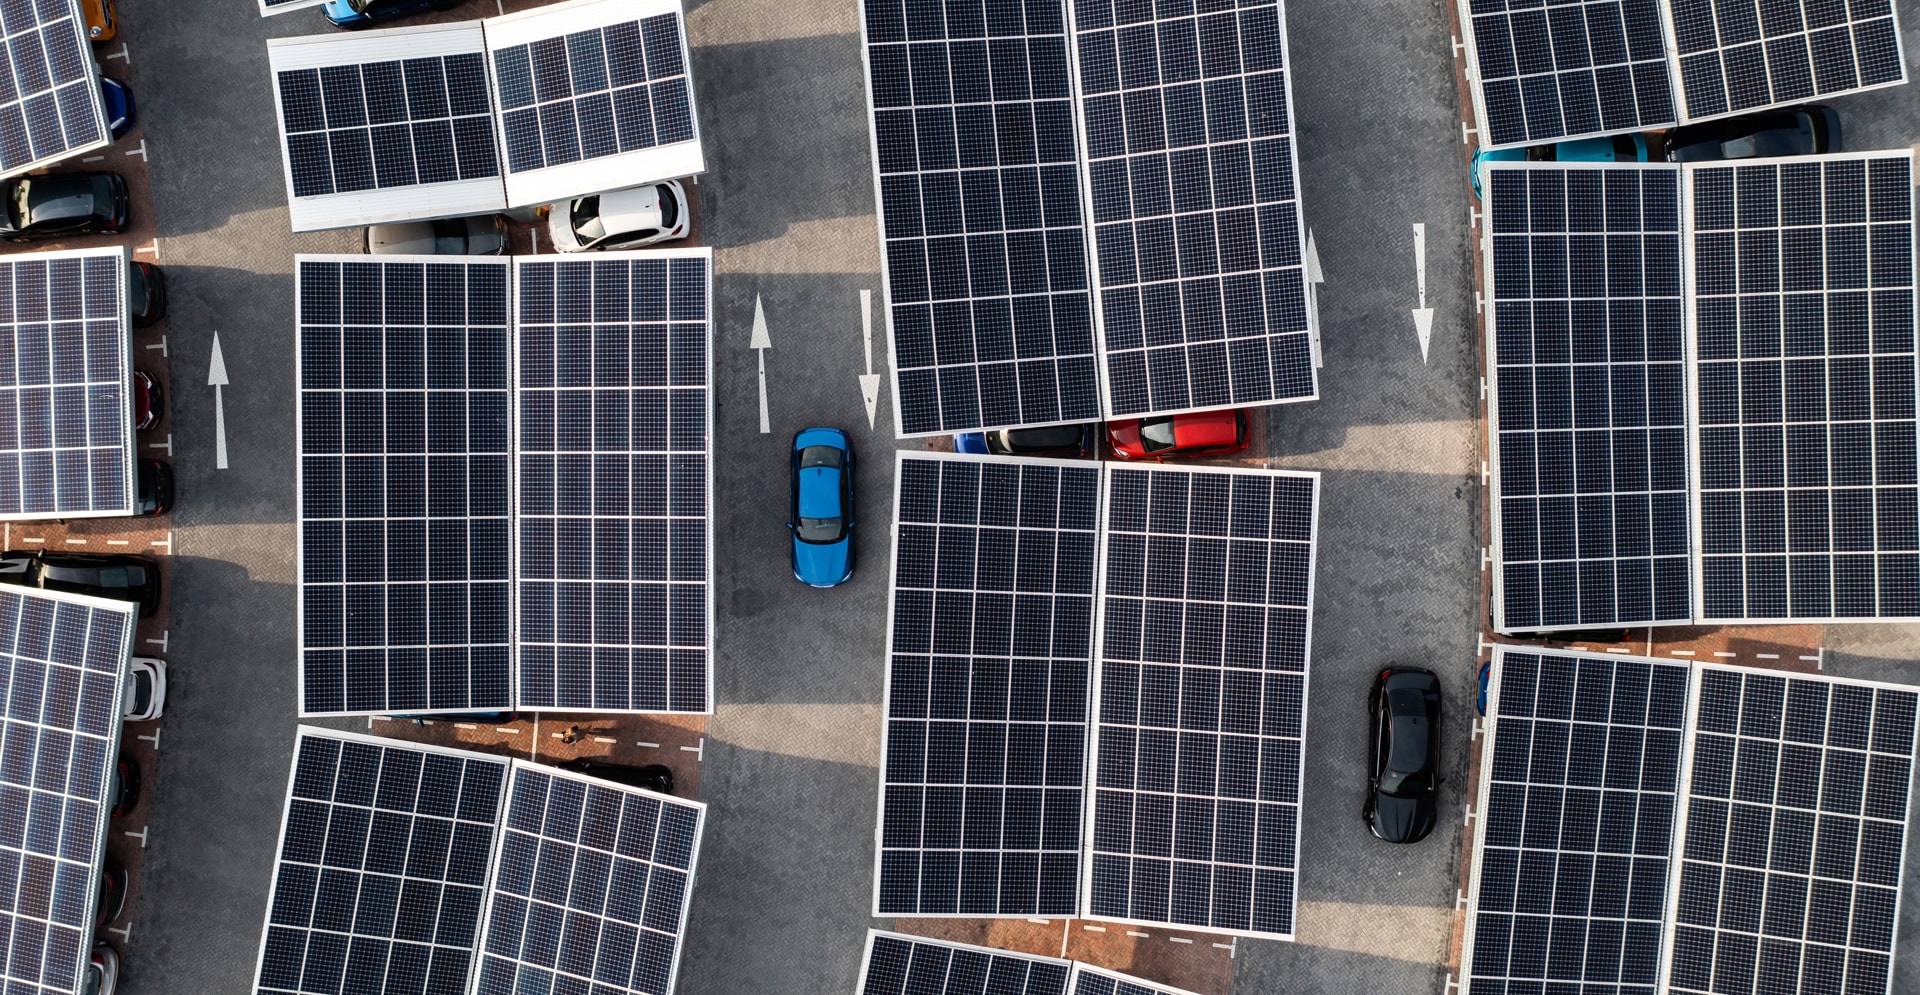 Stazione di ricarica per veicoli con pannelli solari per l'infrastruttura e l'immagazzinamento dell'energia